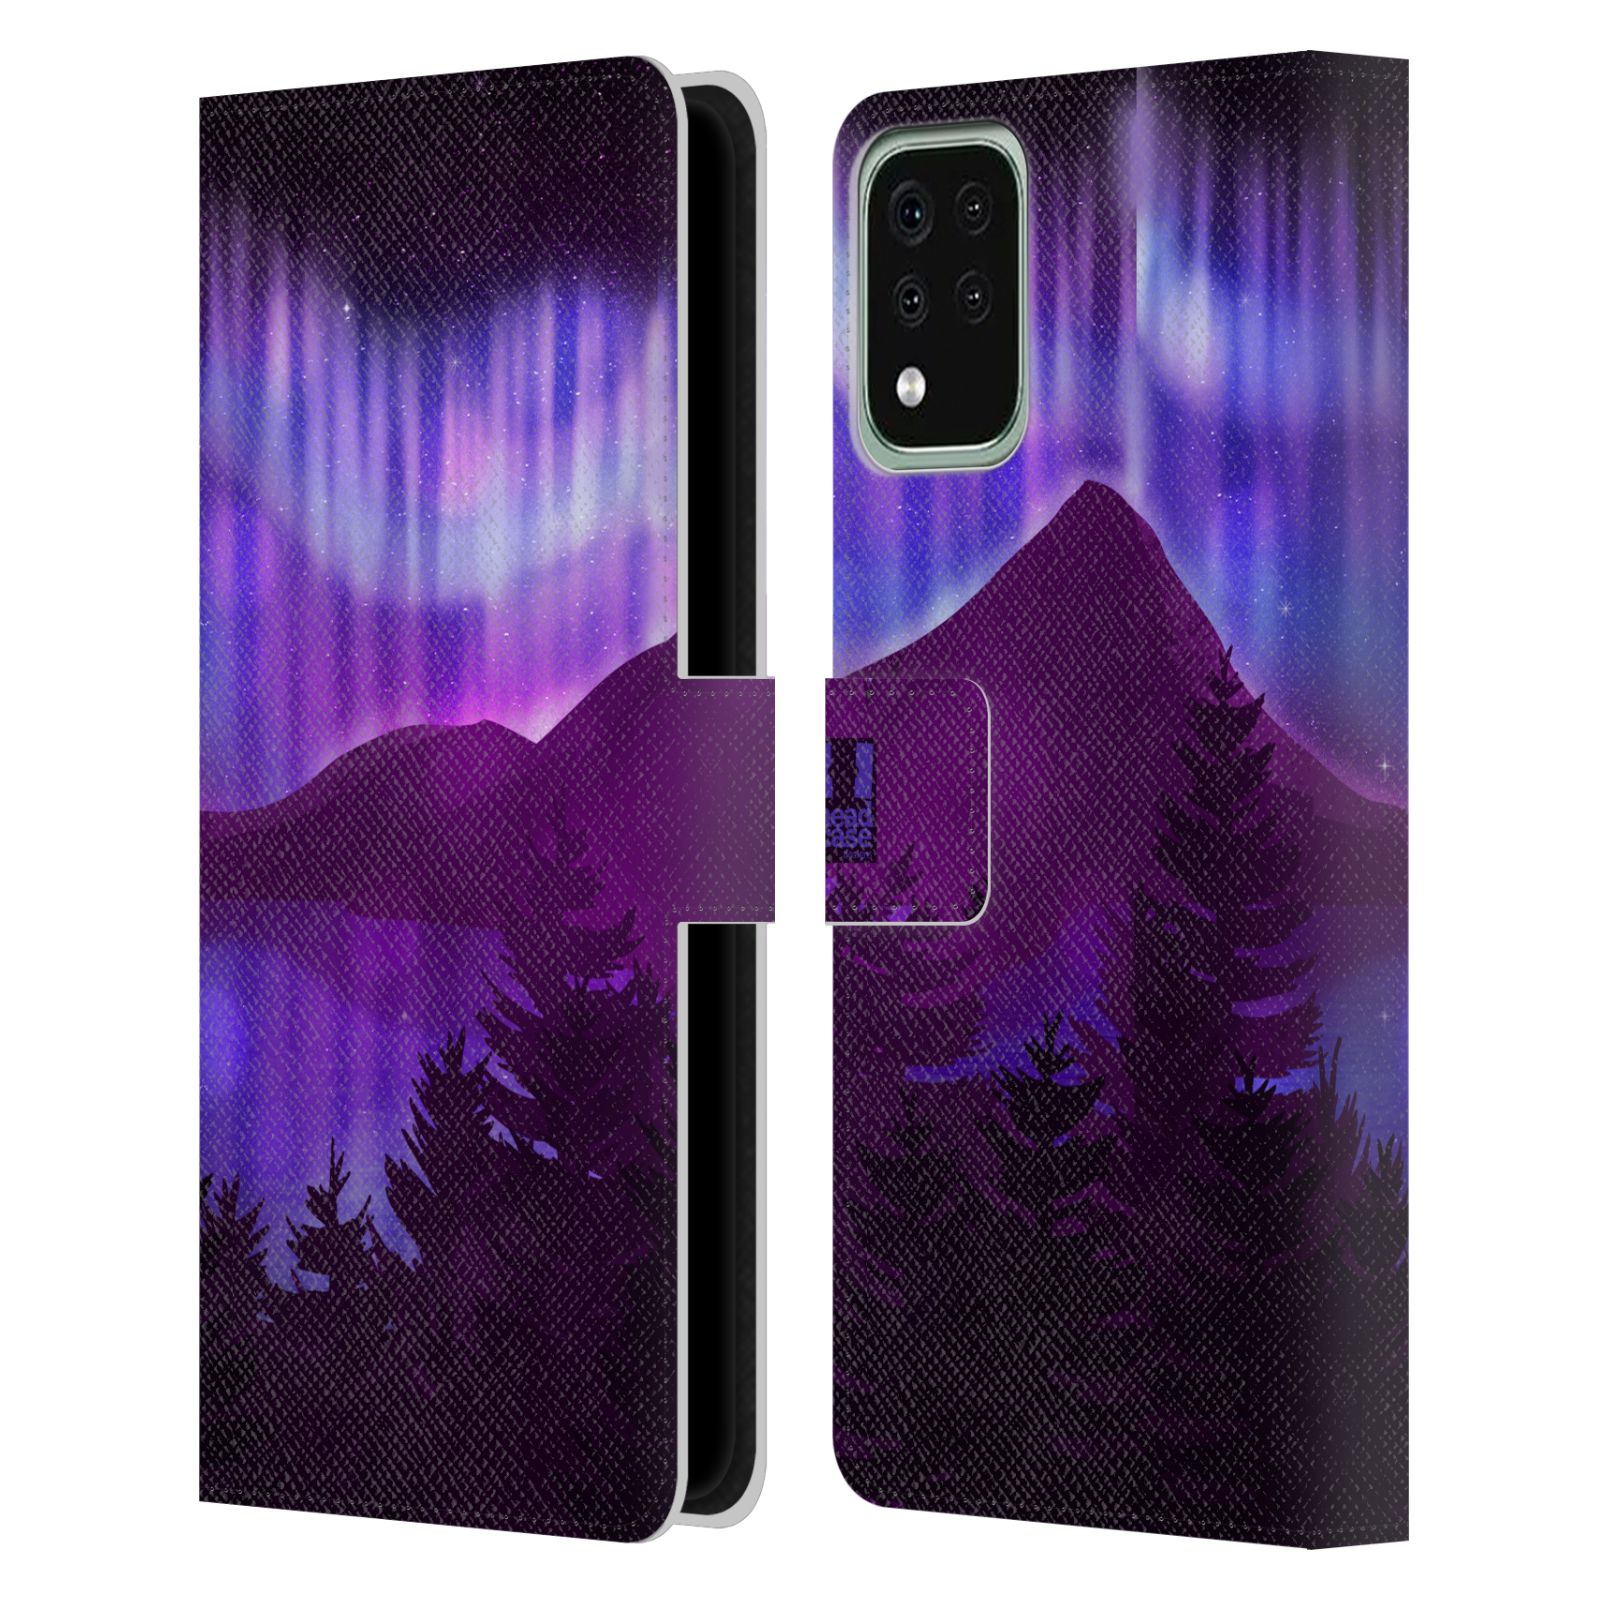 Pouzdro na mobil LG K42 / K52 / K62 - HEAD CASE - Hory a lesy fialový odstín